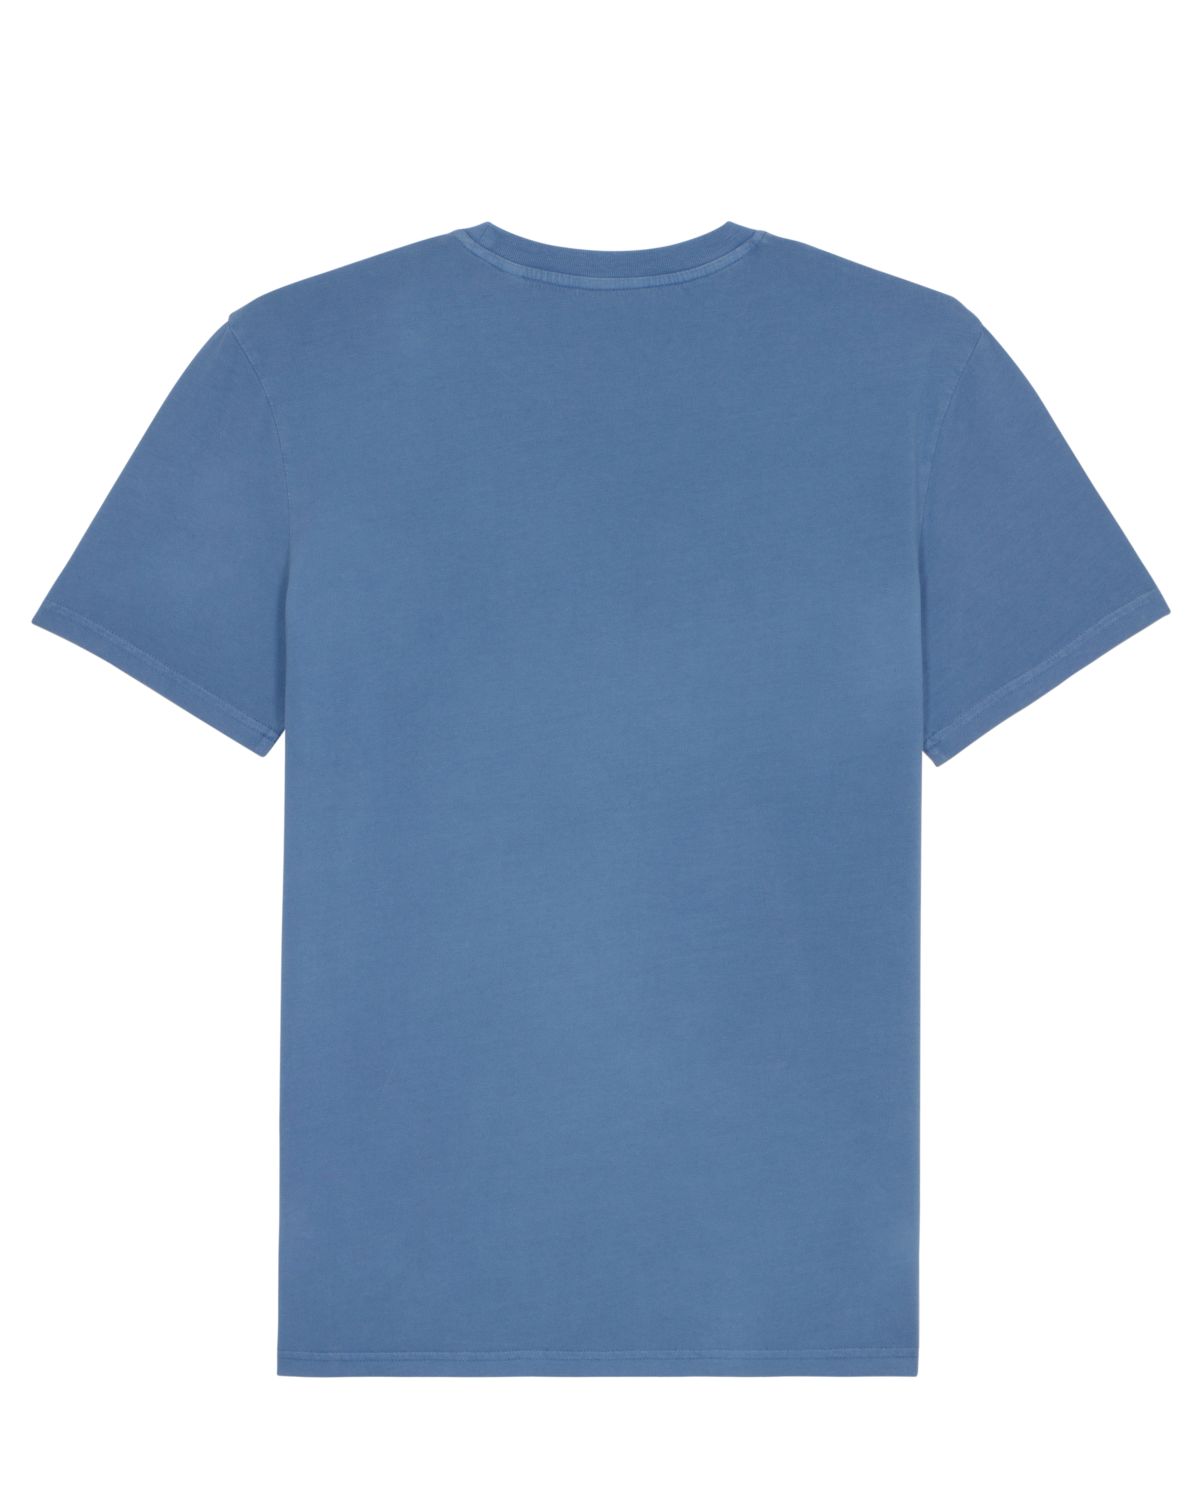 Niebieski t-shirt z bawełny organicznej o spranym wyglądzie Creator Vintage RAVEN